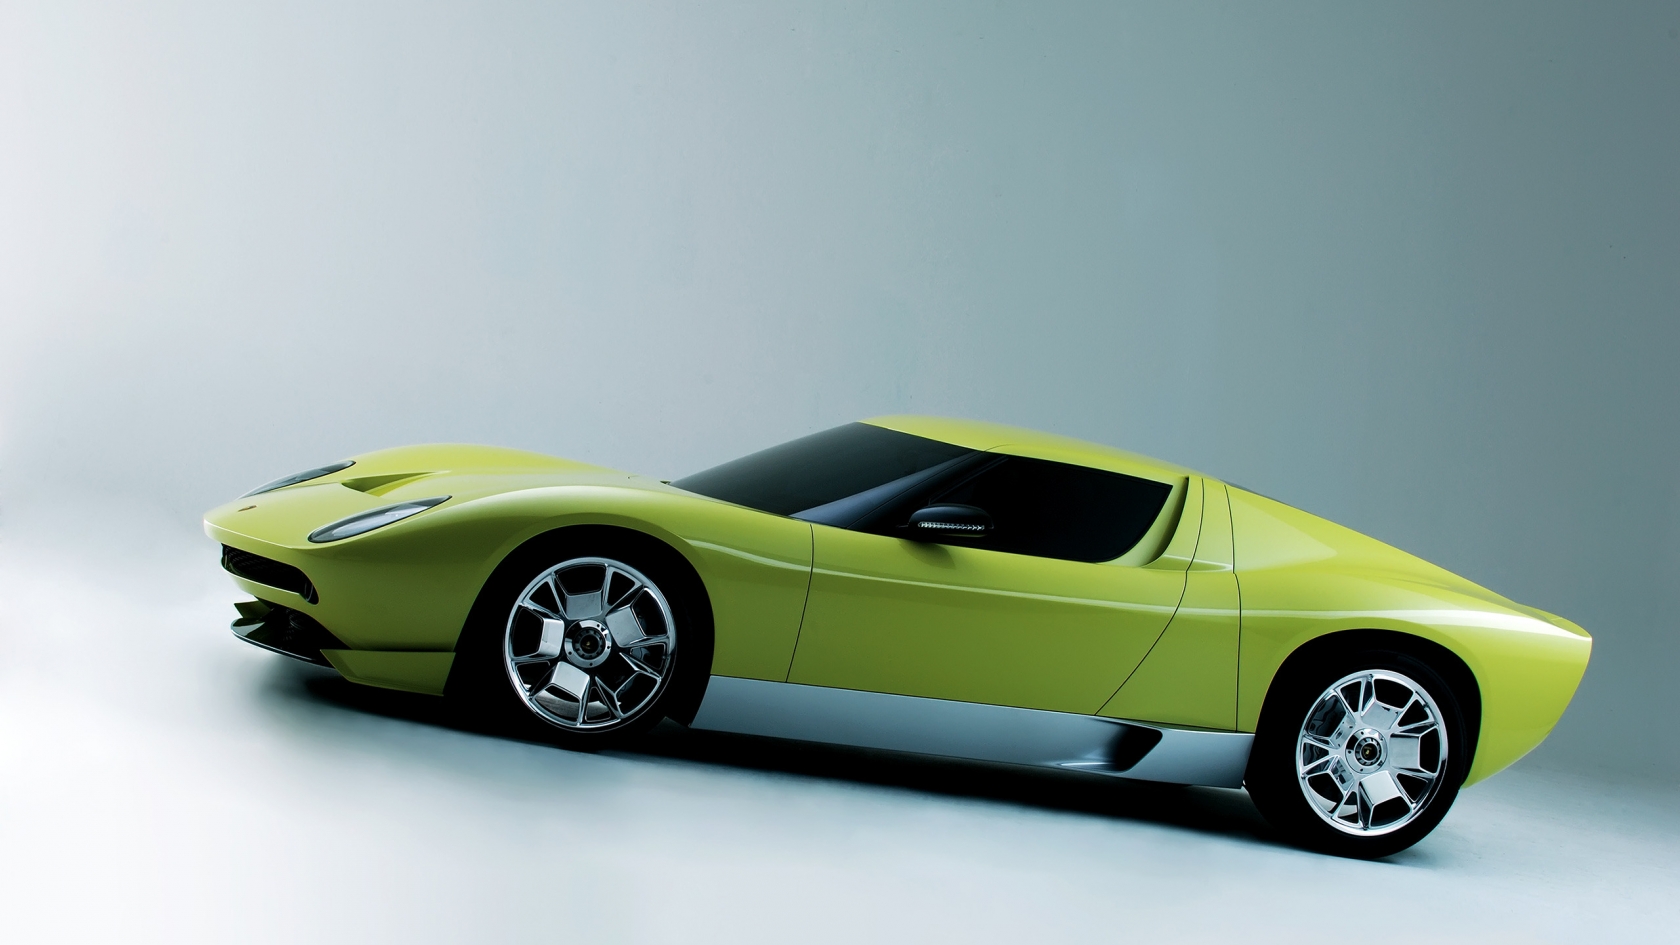 Lamborghini Miura Concept Side for 1680 x 945 HDTV resolution